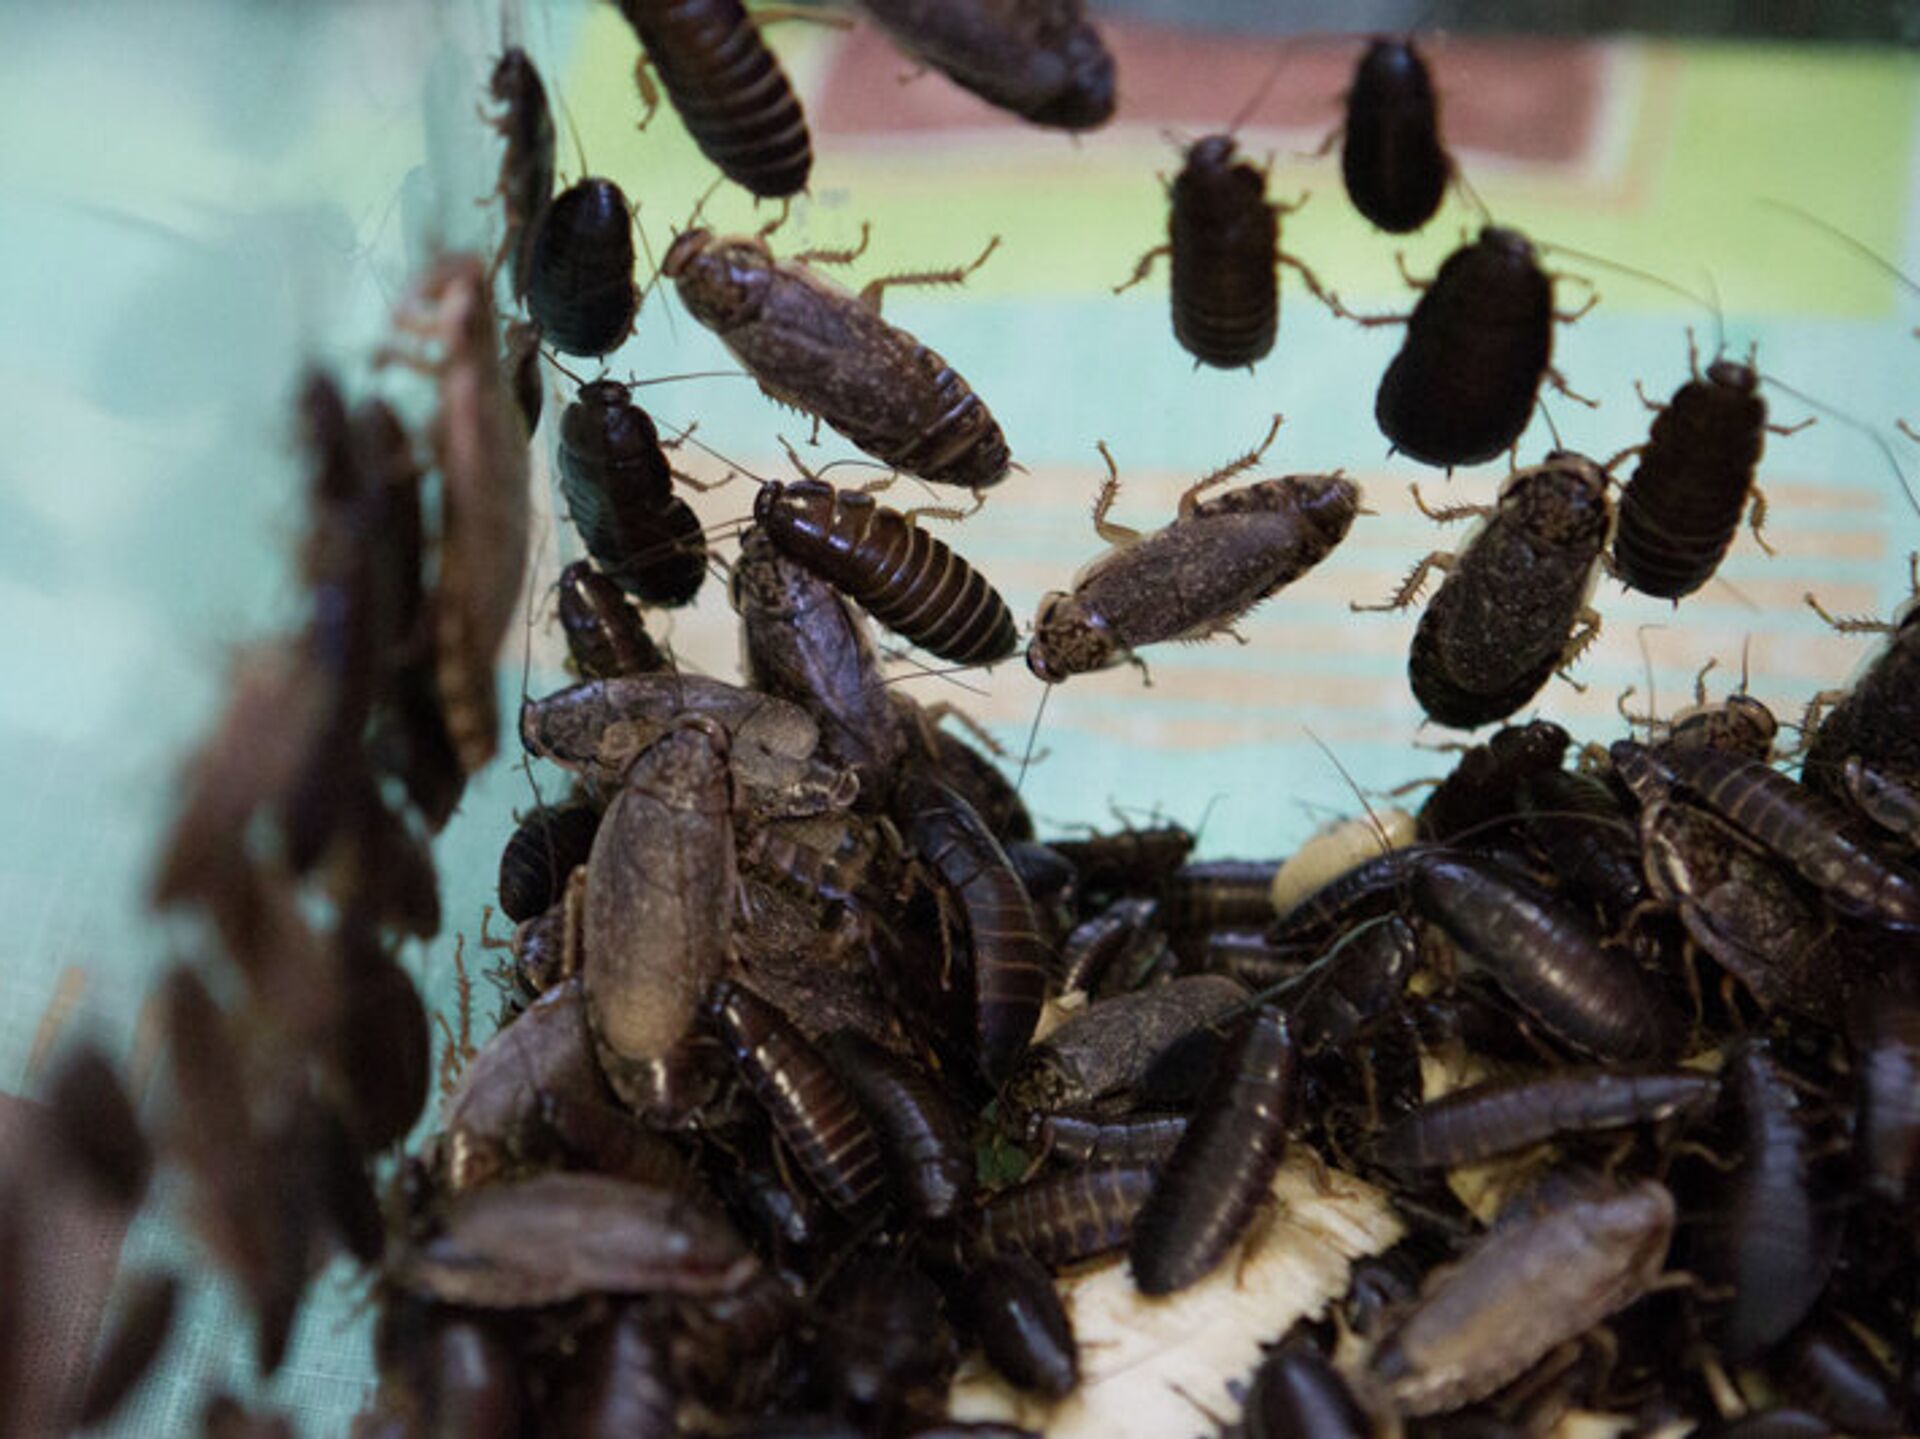 Как избавиться от тараканов в квартире